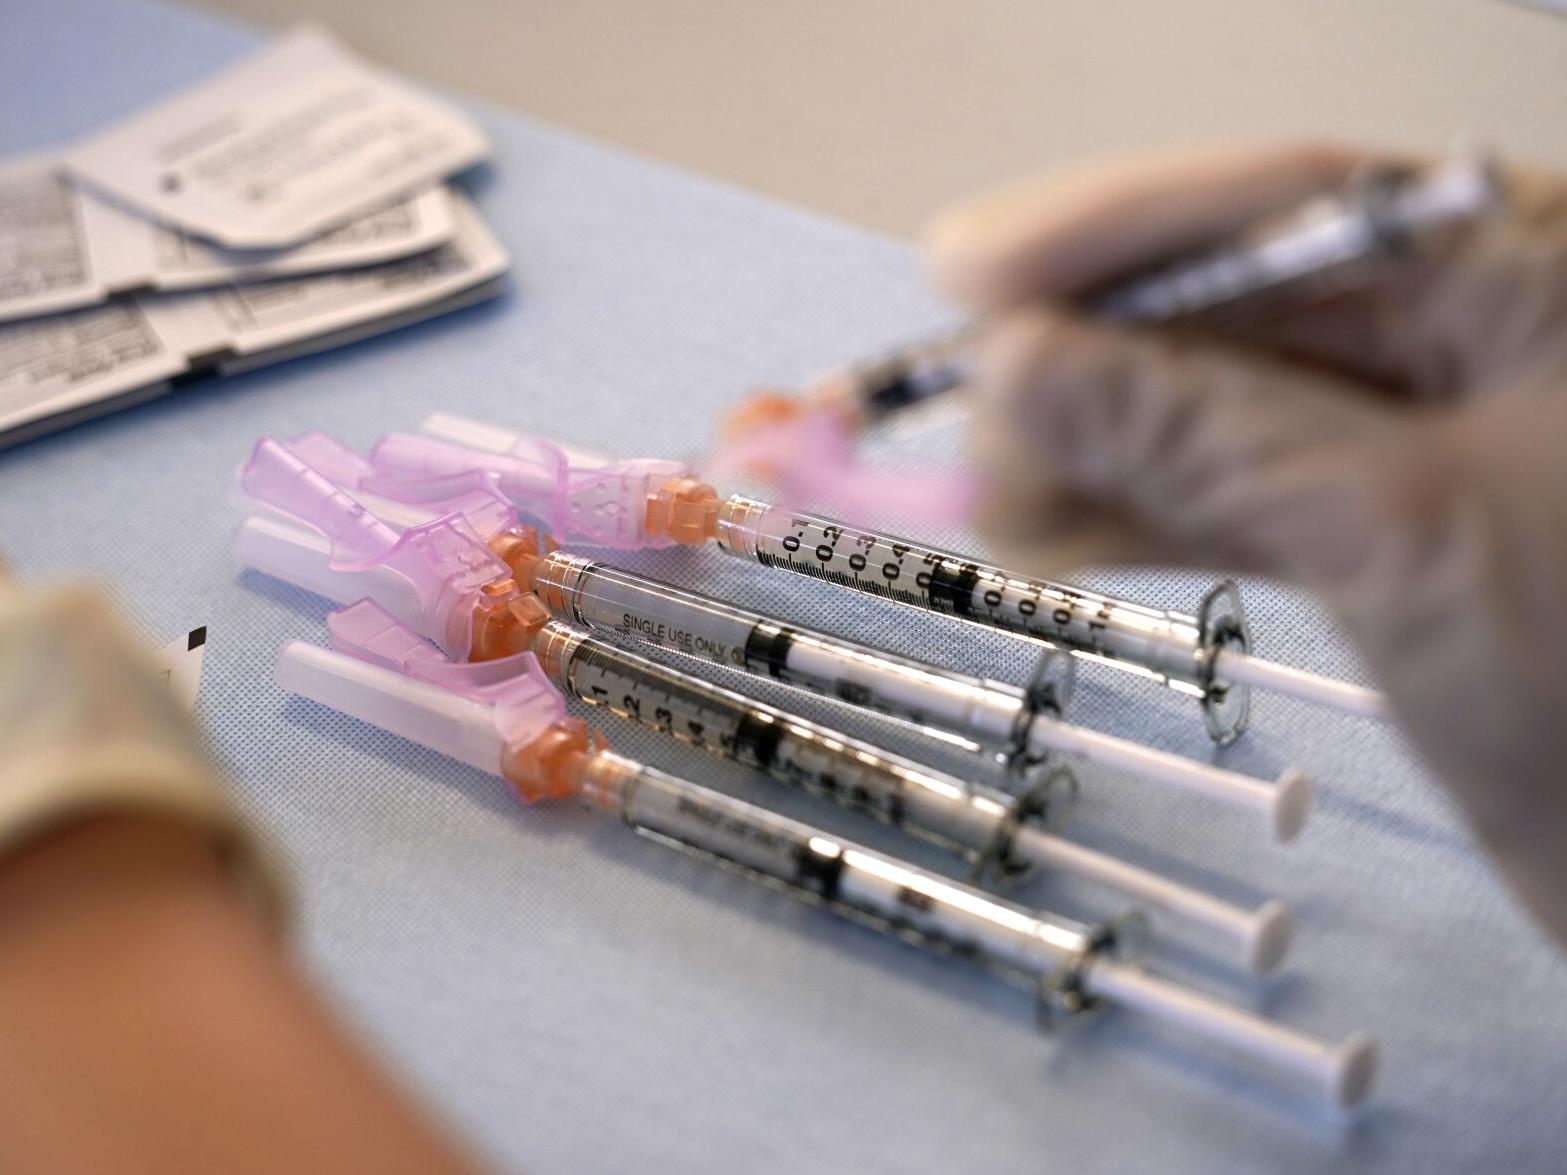 Kankakee County Health Department Hosts Vaccine Clinic May 4 Coronavirus Daily-journalcom